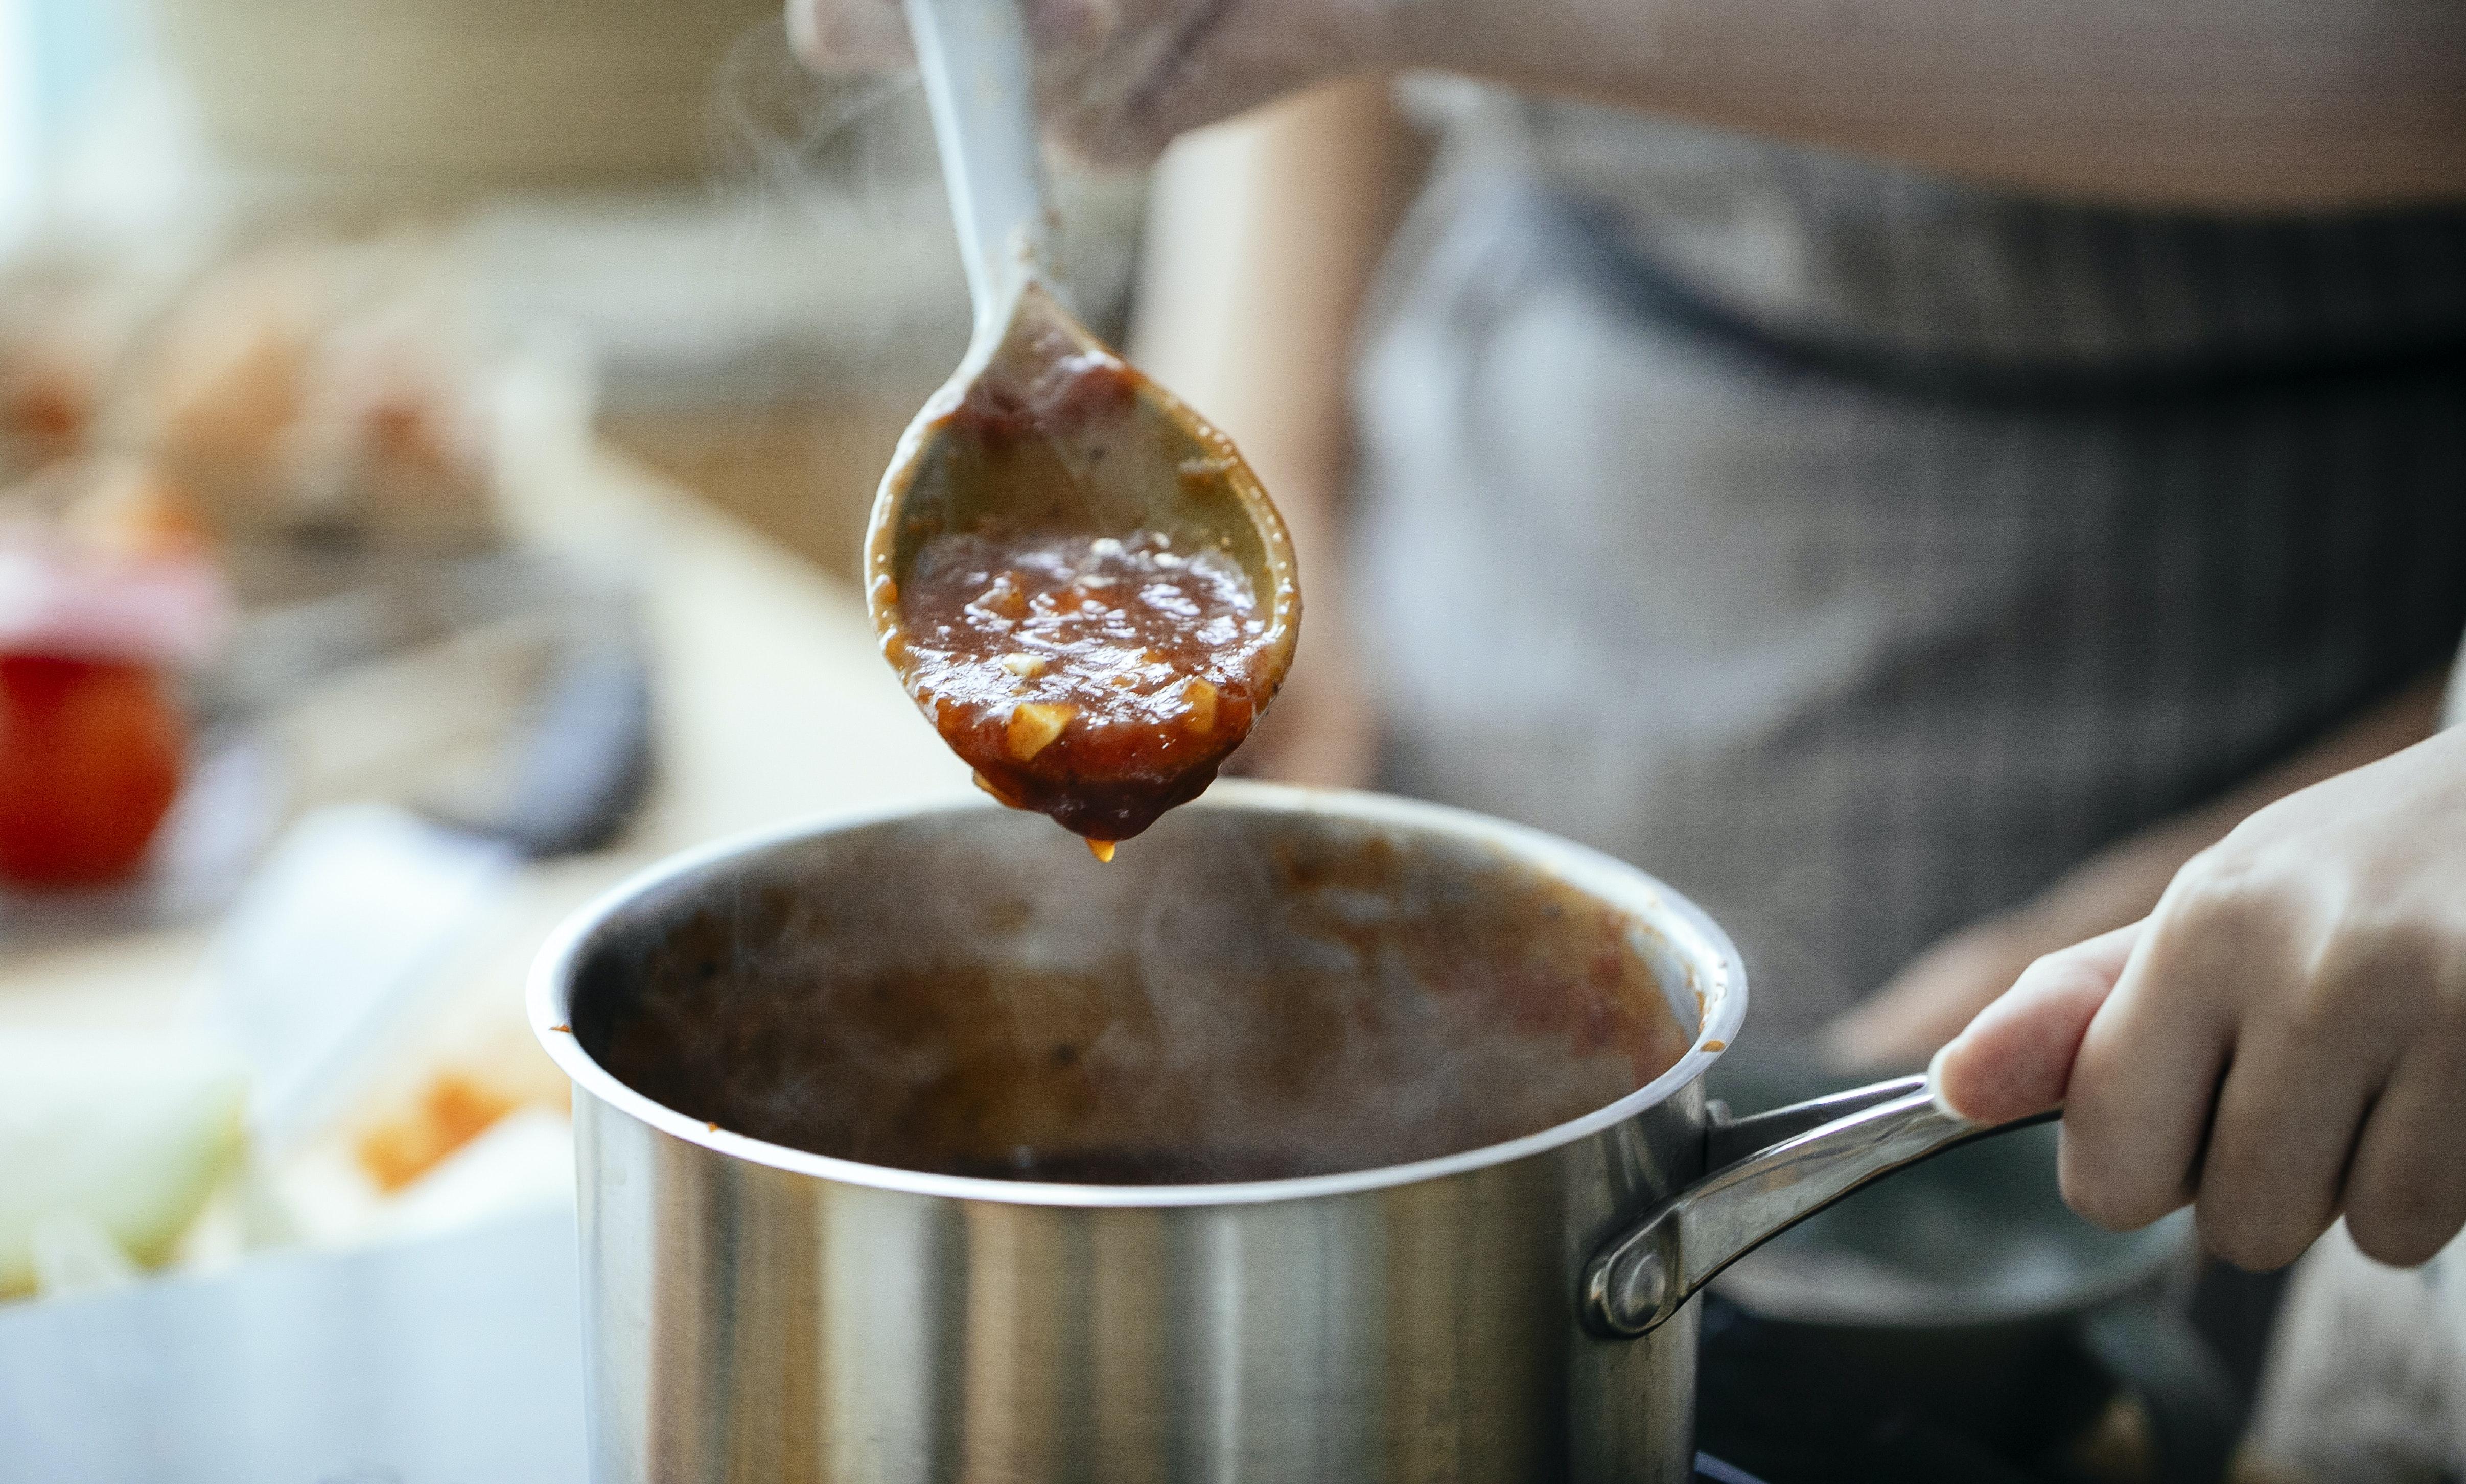  How Do You Turn A Sauce Into A Glaze 